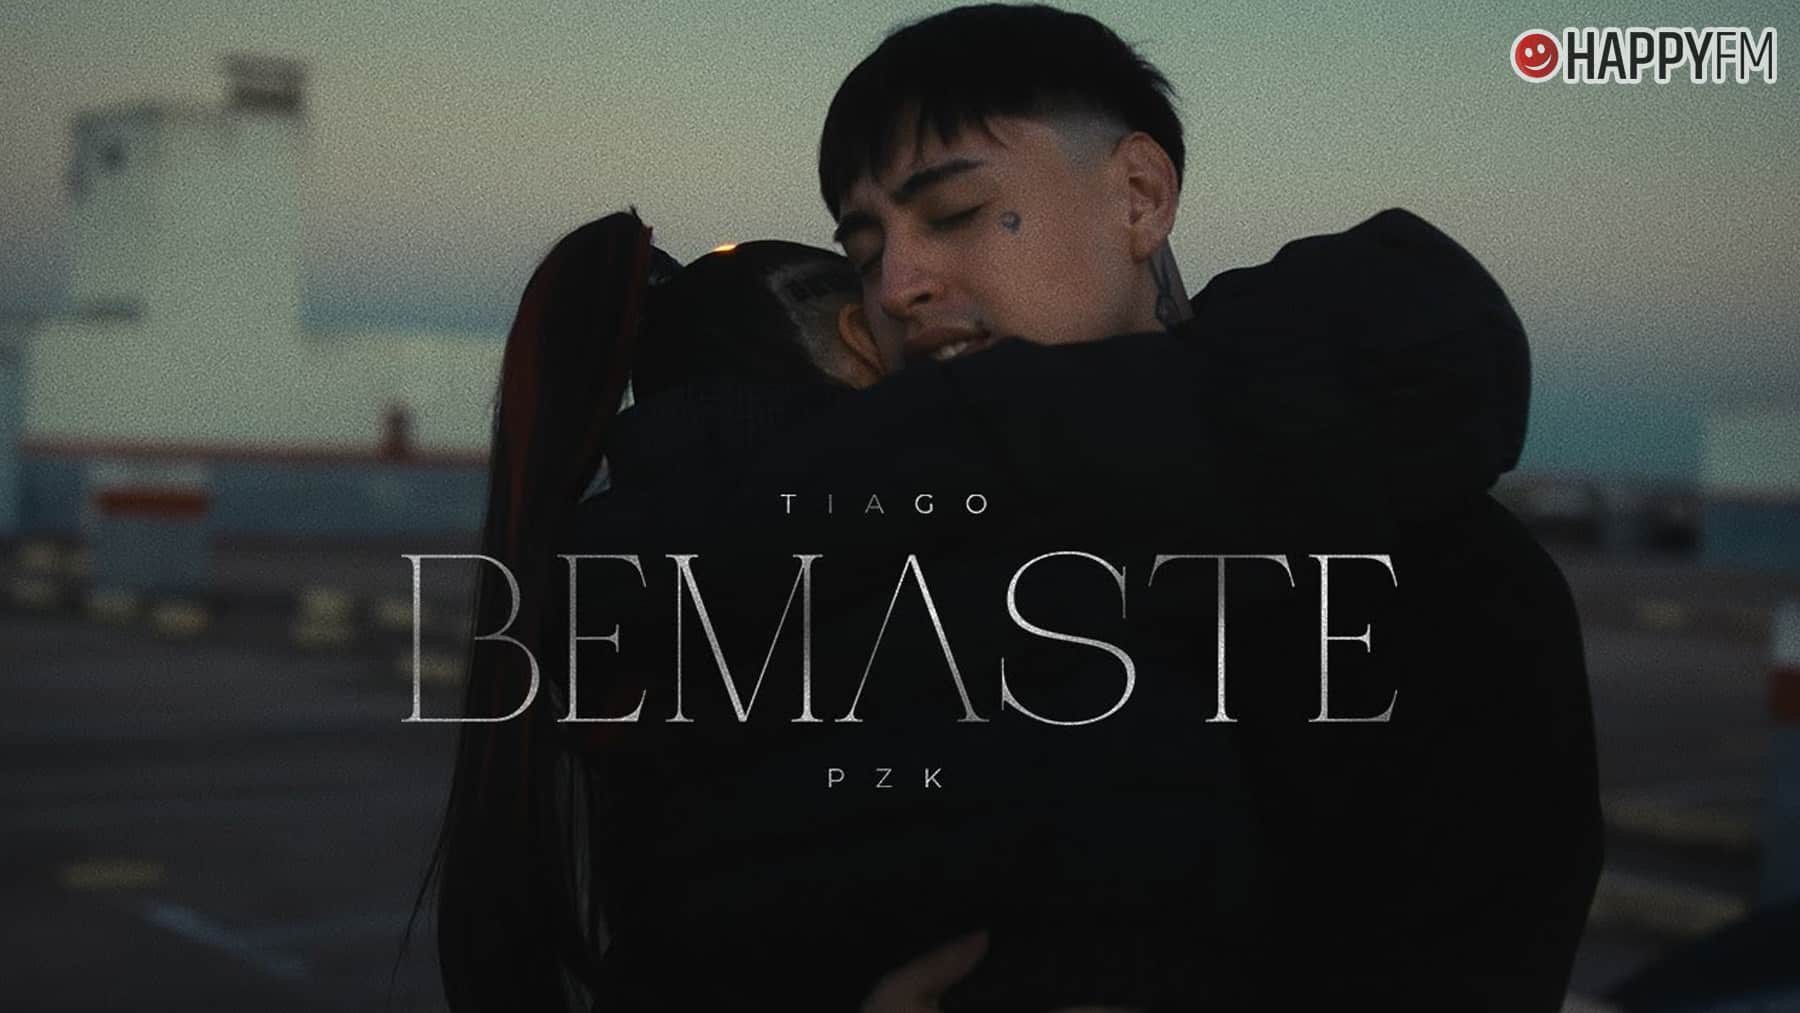 ‘Bemaste’, de Tiago PZK: letra y vídeo